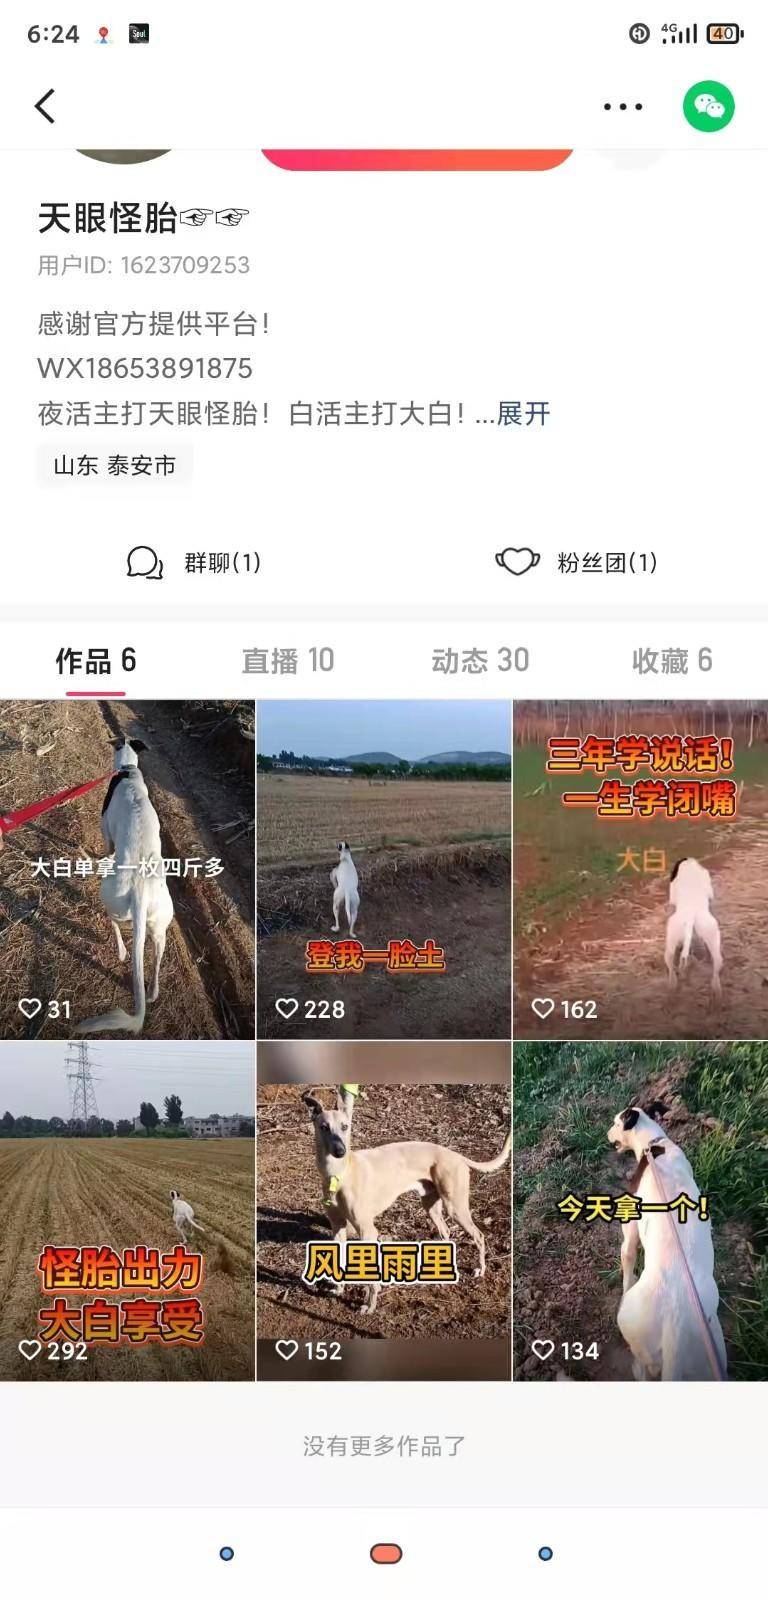 赌狗捕野兔快手图片8(1).jpg